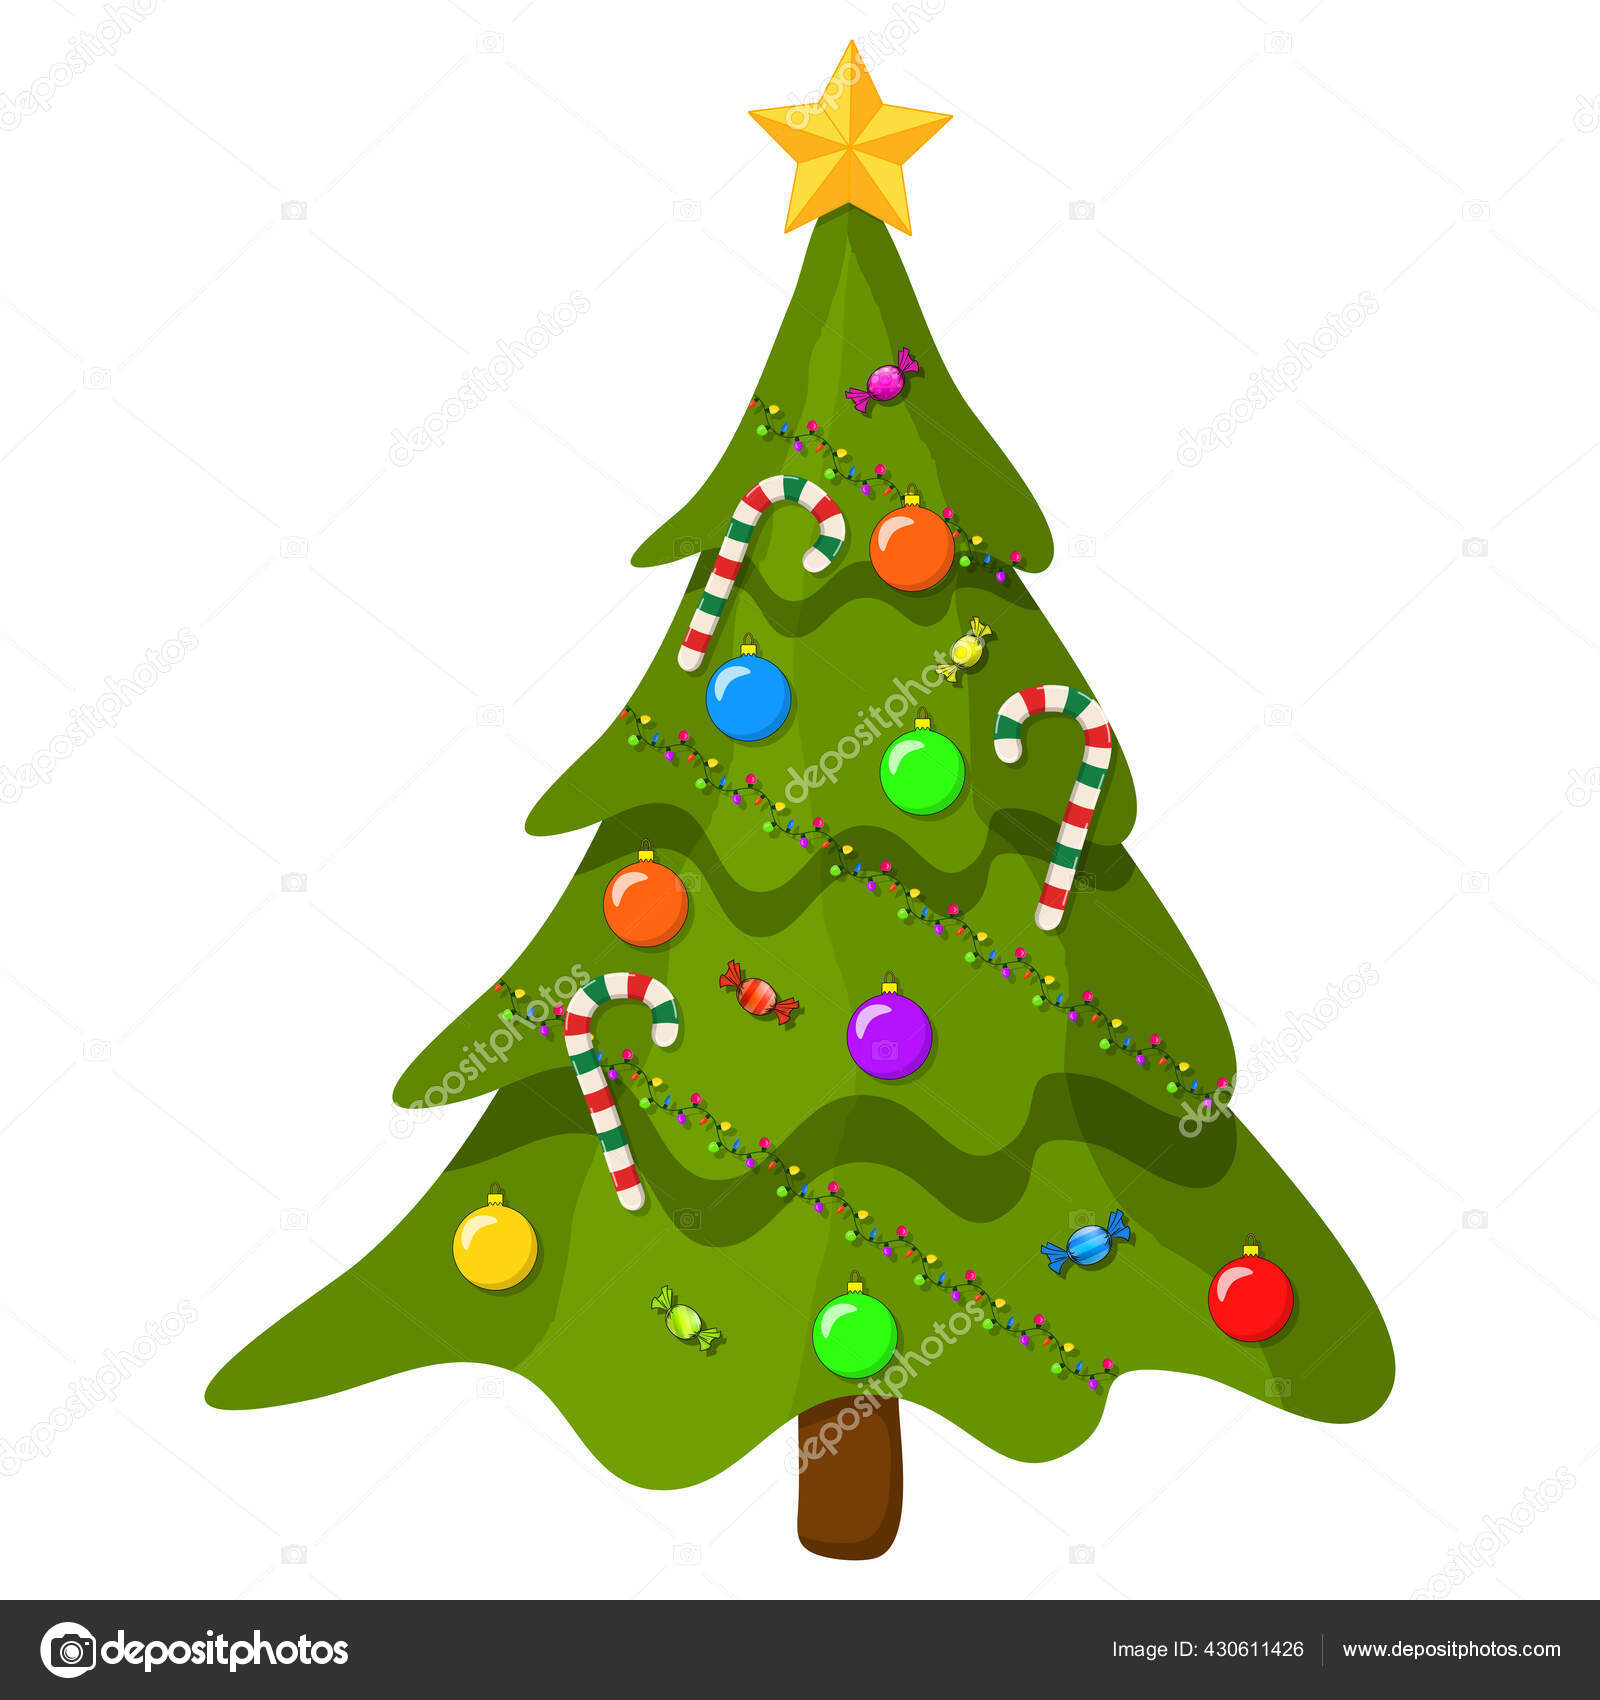 https://st2.depositphotos.com/1798678/43061/v/1600/depositphotos_430611426-stock-illustration-christmas-tree-ornaments-cartoon-illustration.jpg